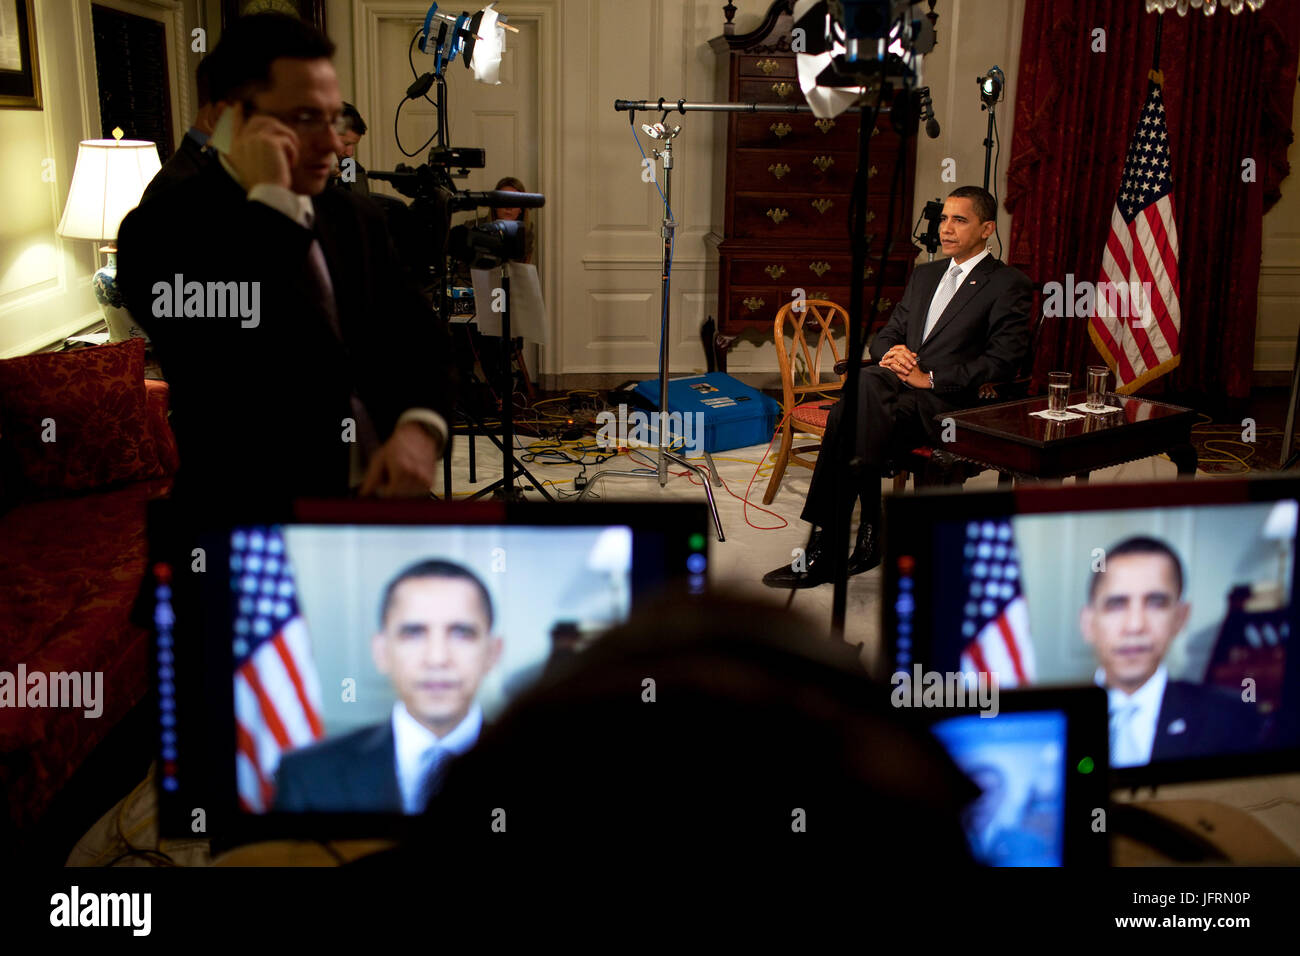 Le président Obama mène des entrevues dans la salle des cartes 3/30/09. Photo Officiel de la Maison Blanche par Pete Souza Banque D'Images